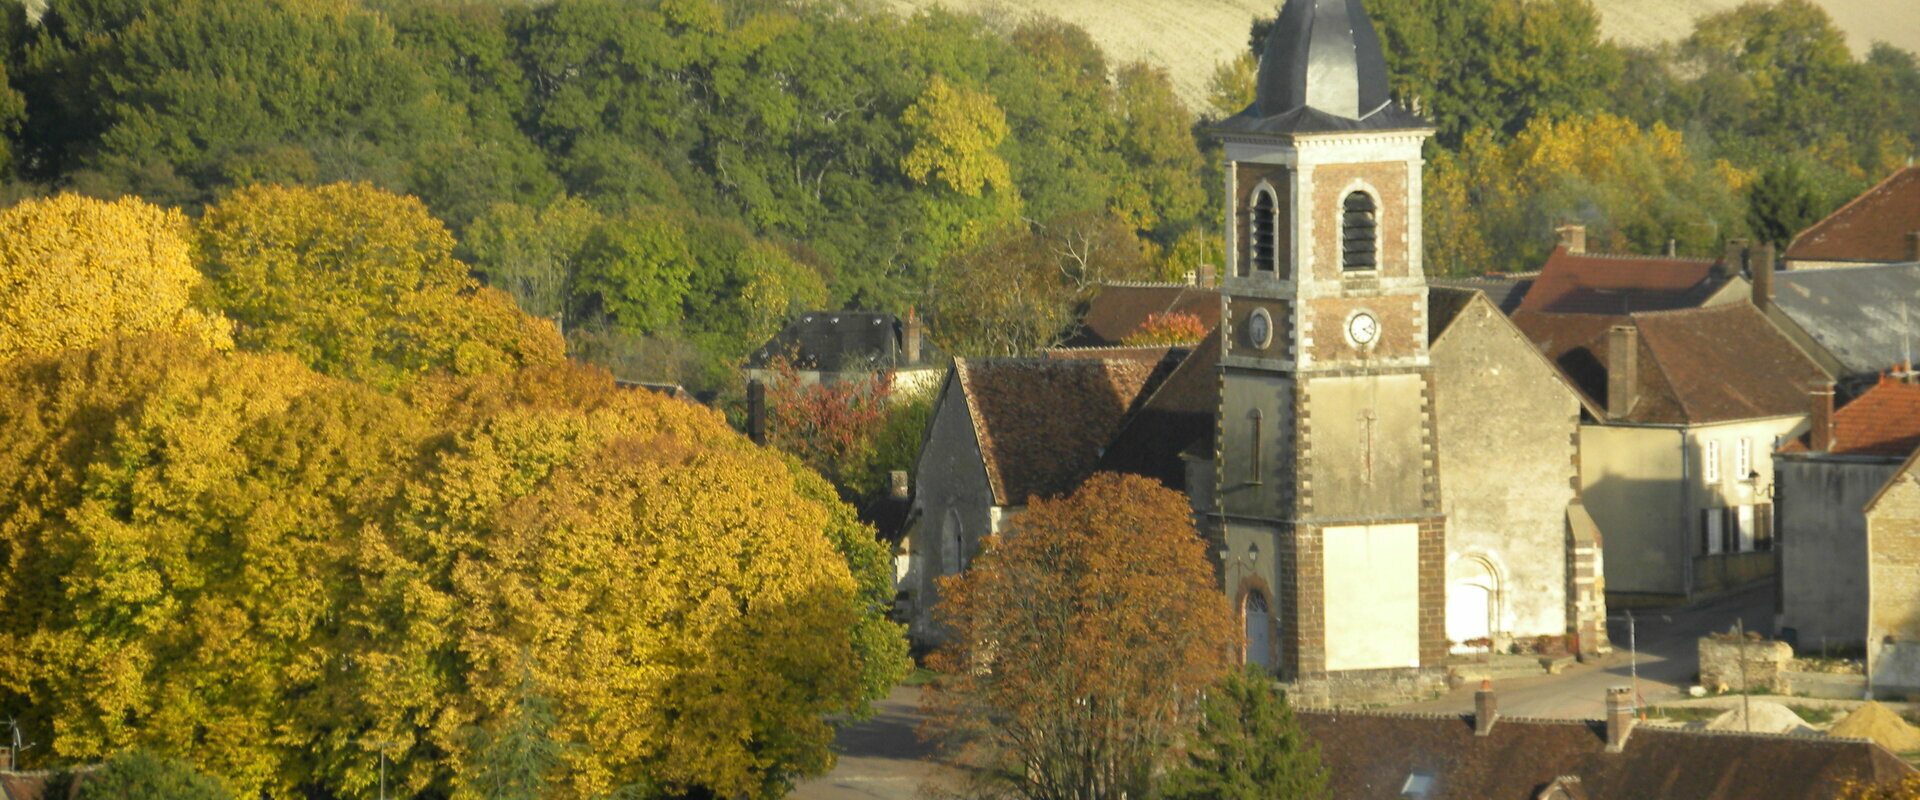 Le patrimoine de la commune de Merry-la-Vallée (89) Yonne